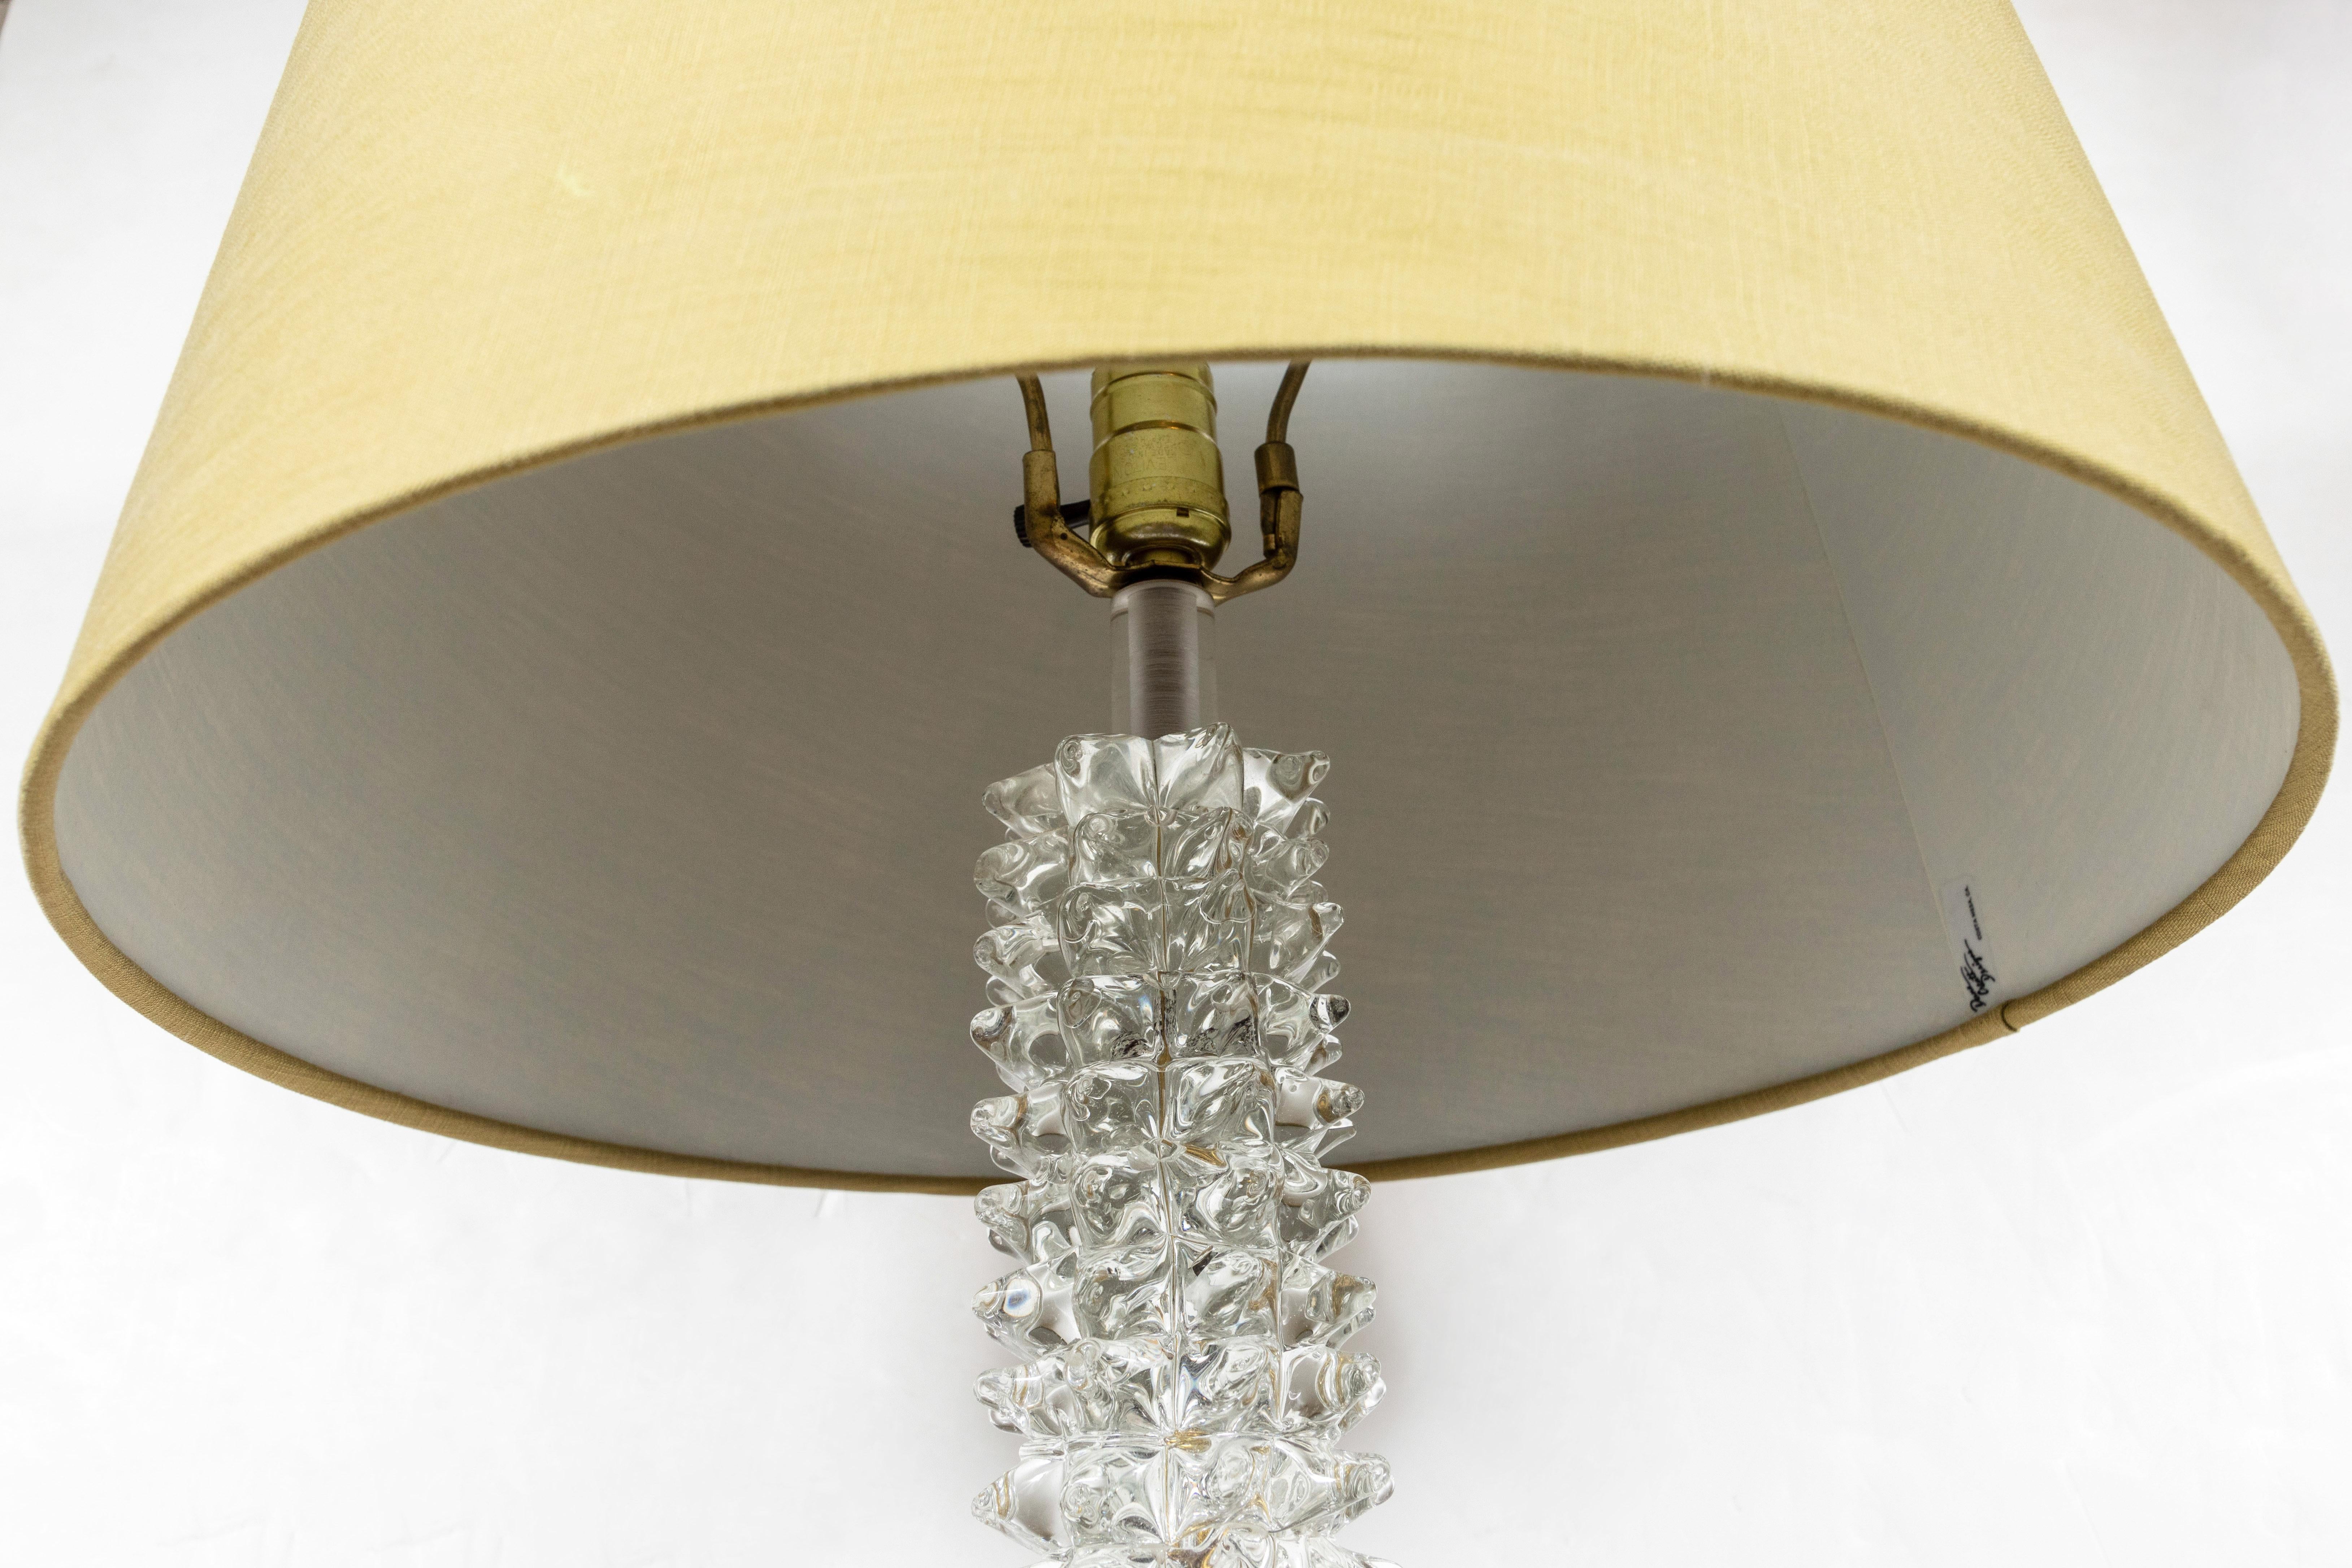 Italian Midcentury, Spiked, Murano Glass Lamps